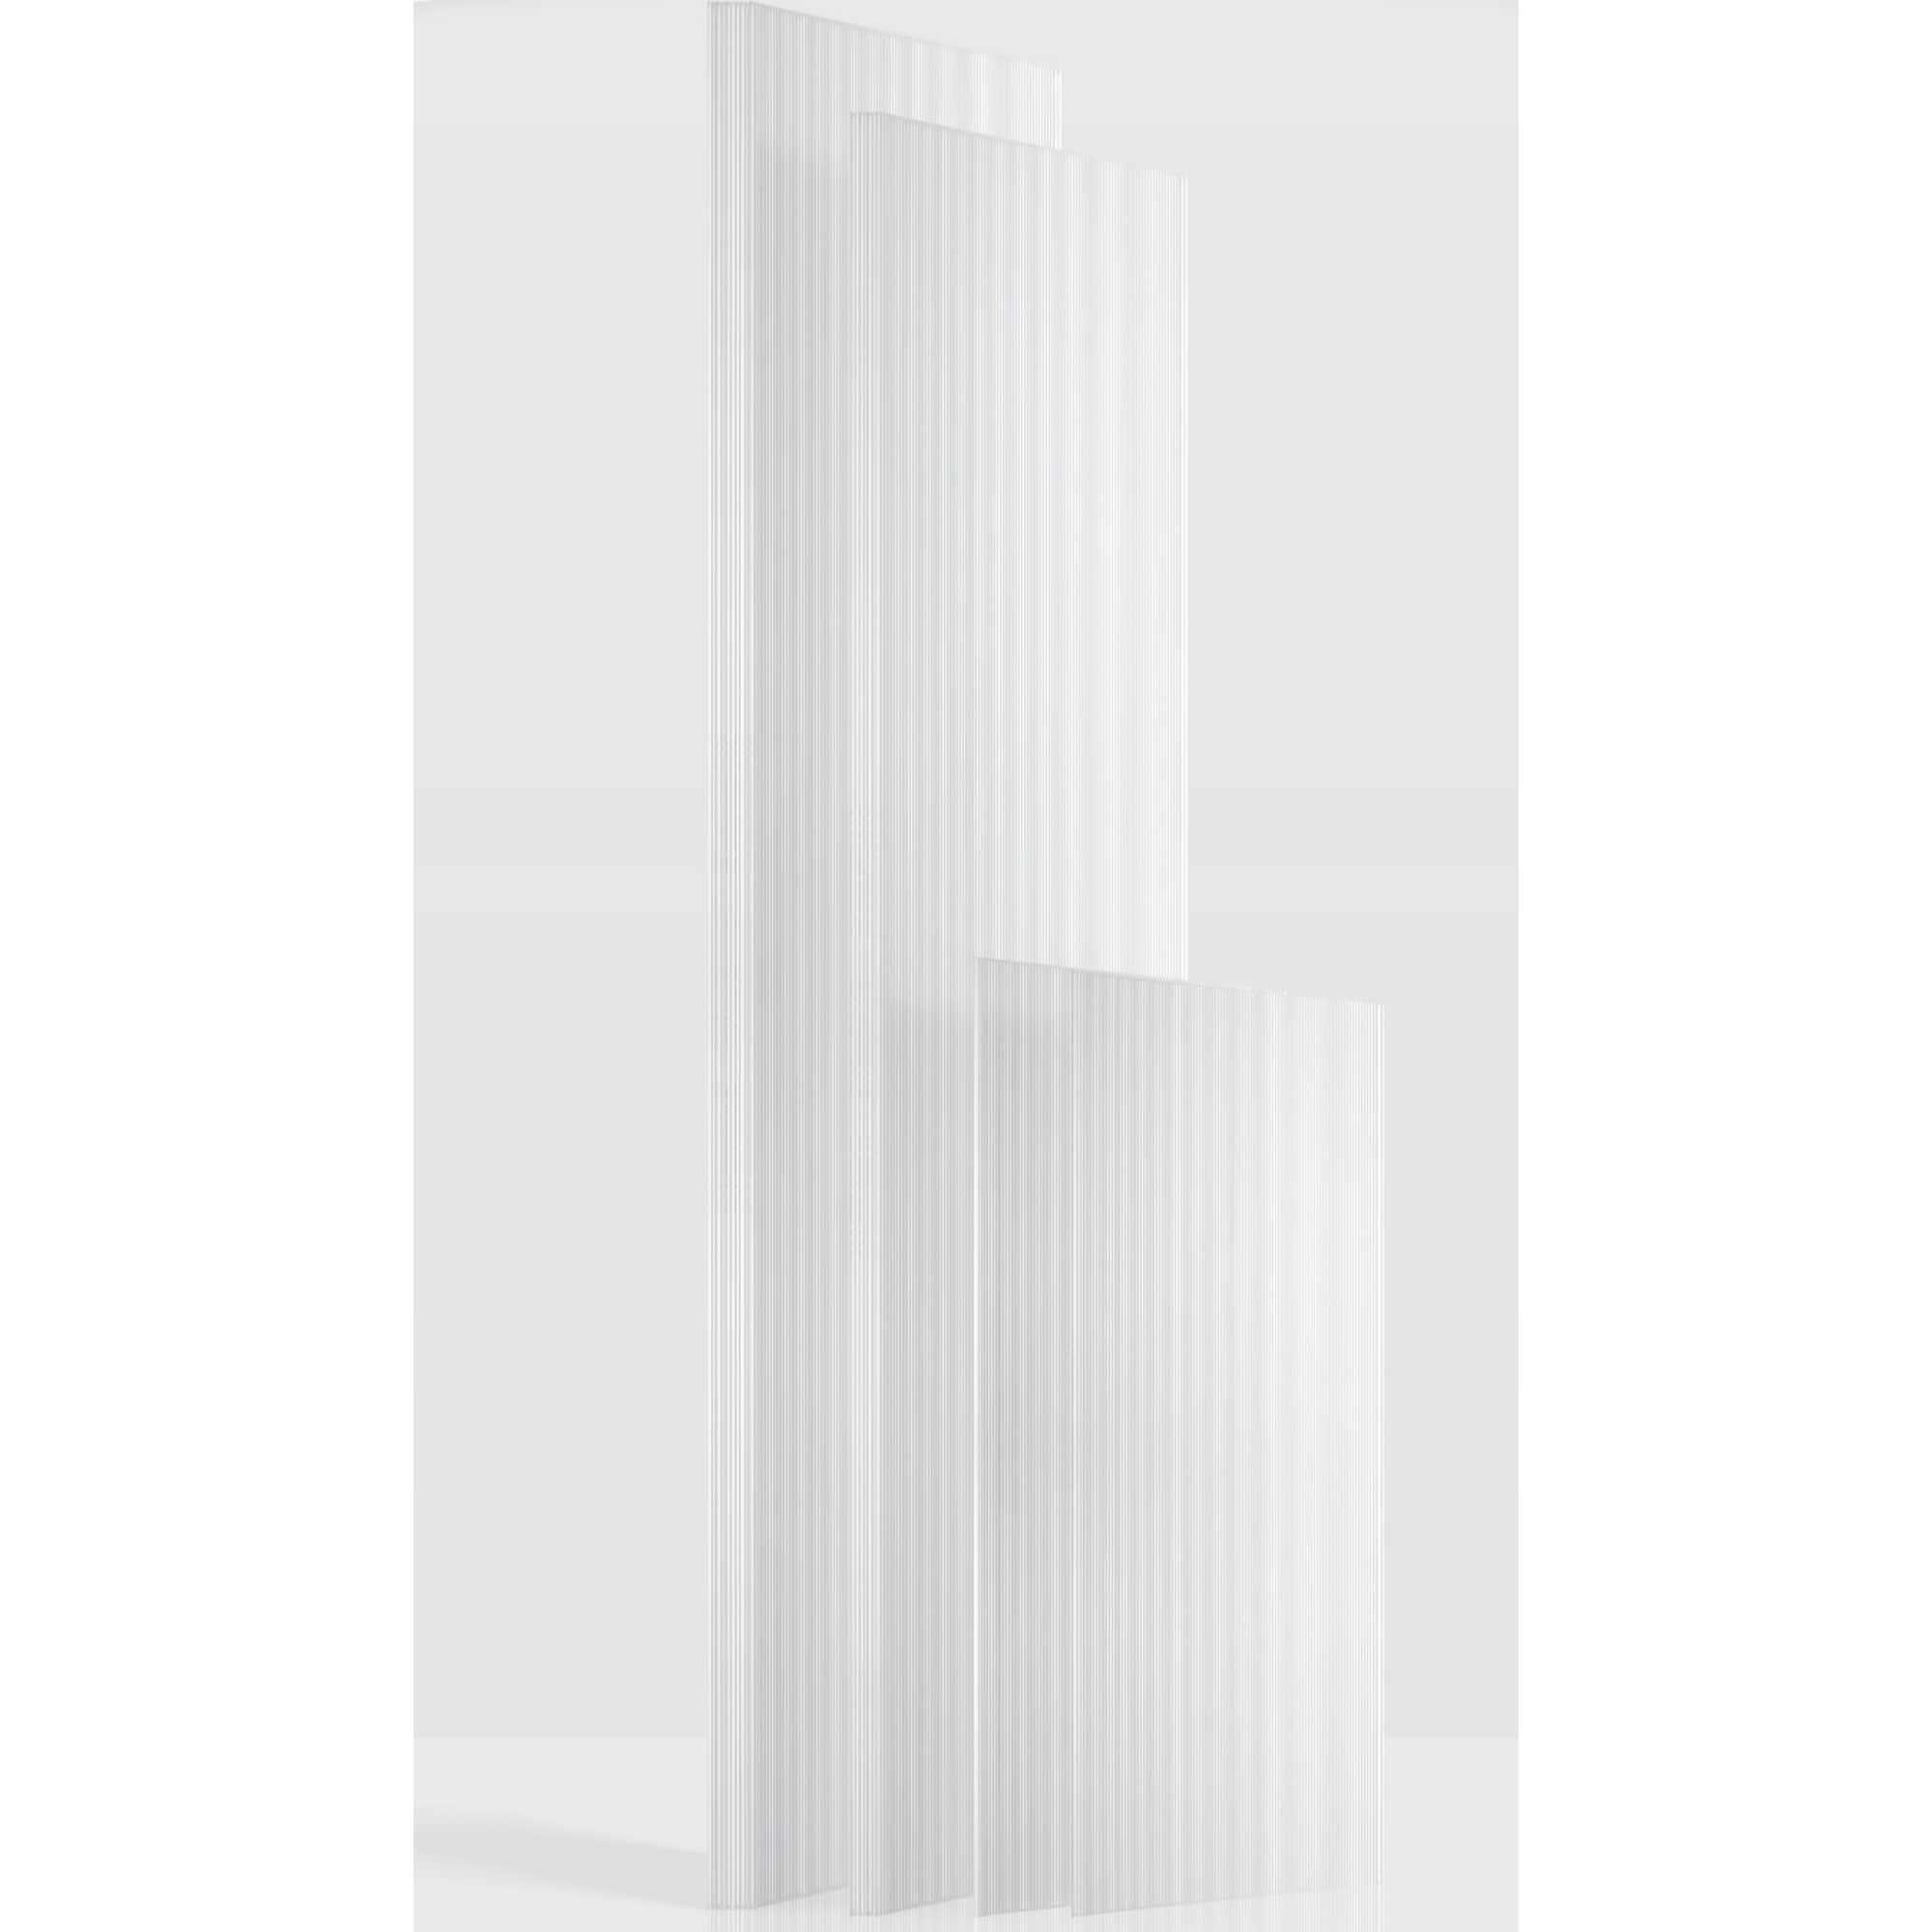 Hohlkammerplatten Gewächshaus 'Ergänzungsset 2' transparent 4 mm, 12-teilig + product picture